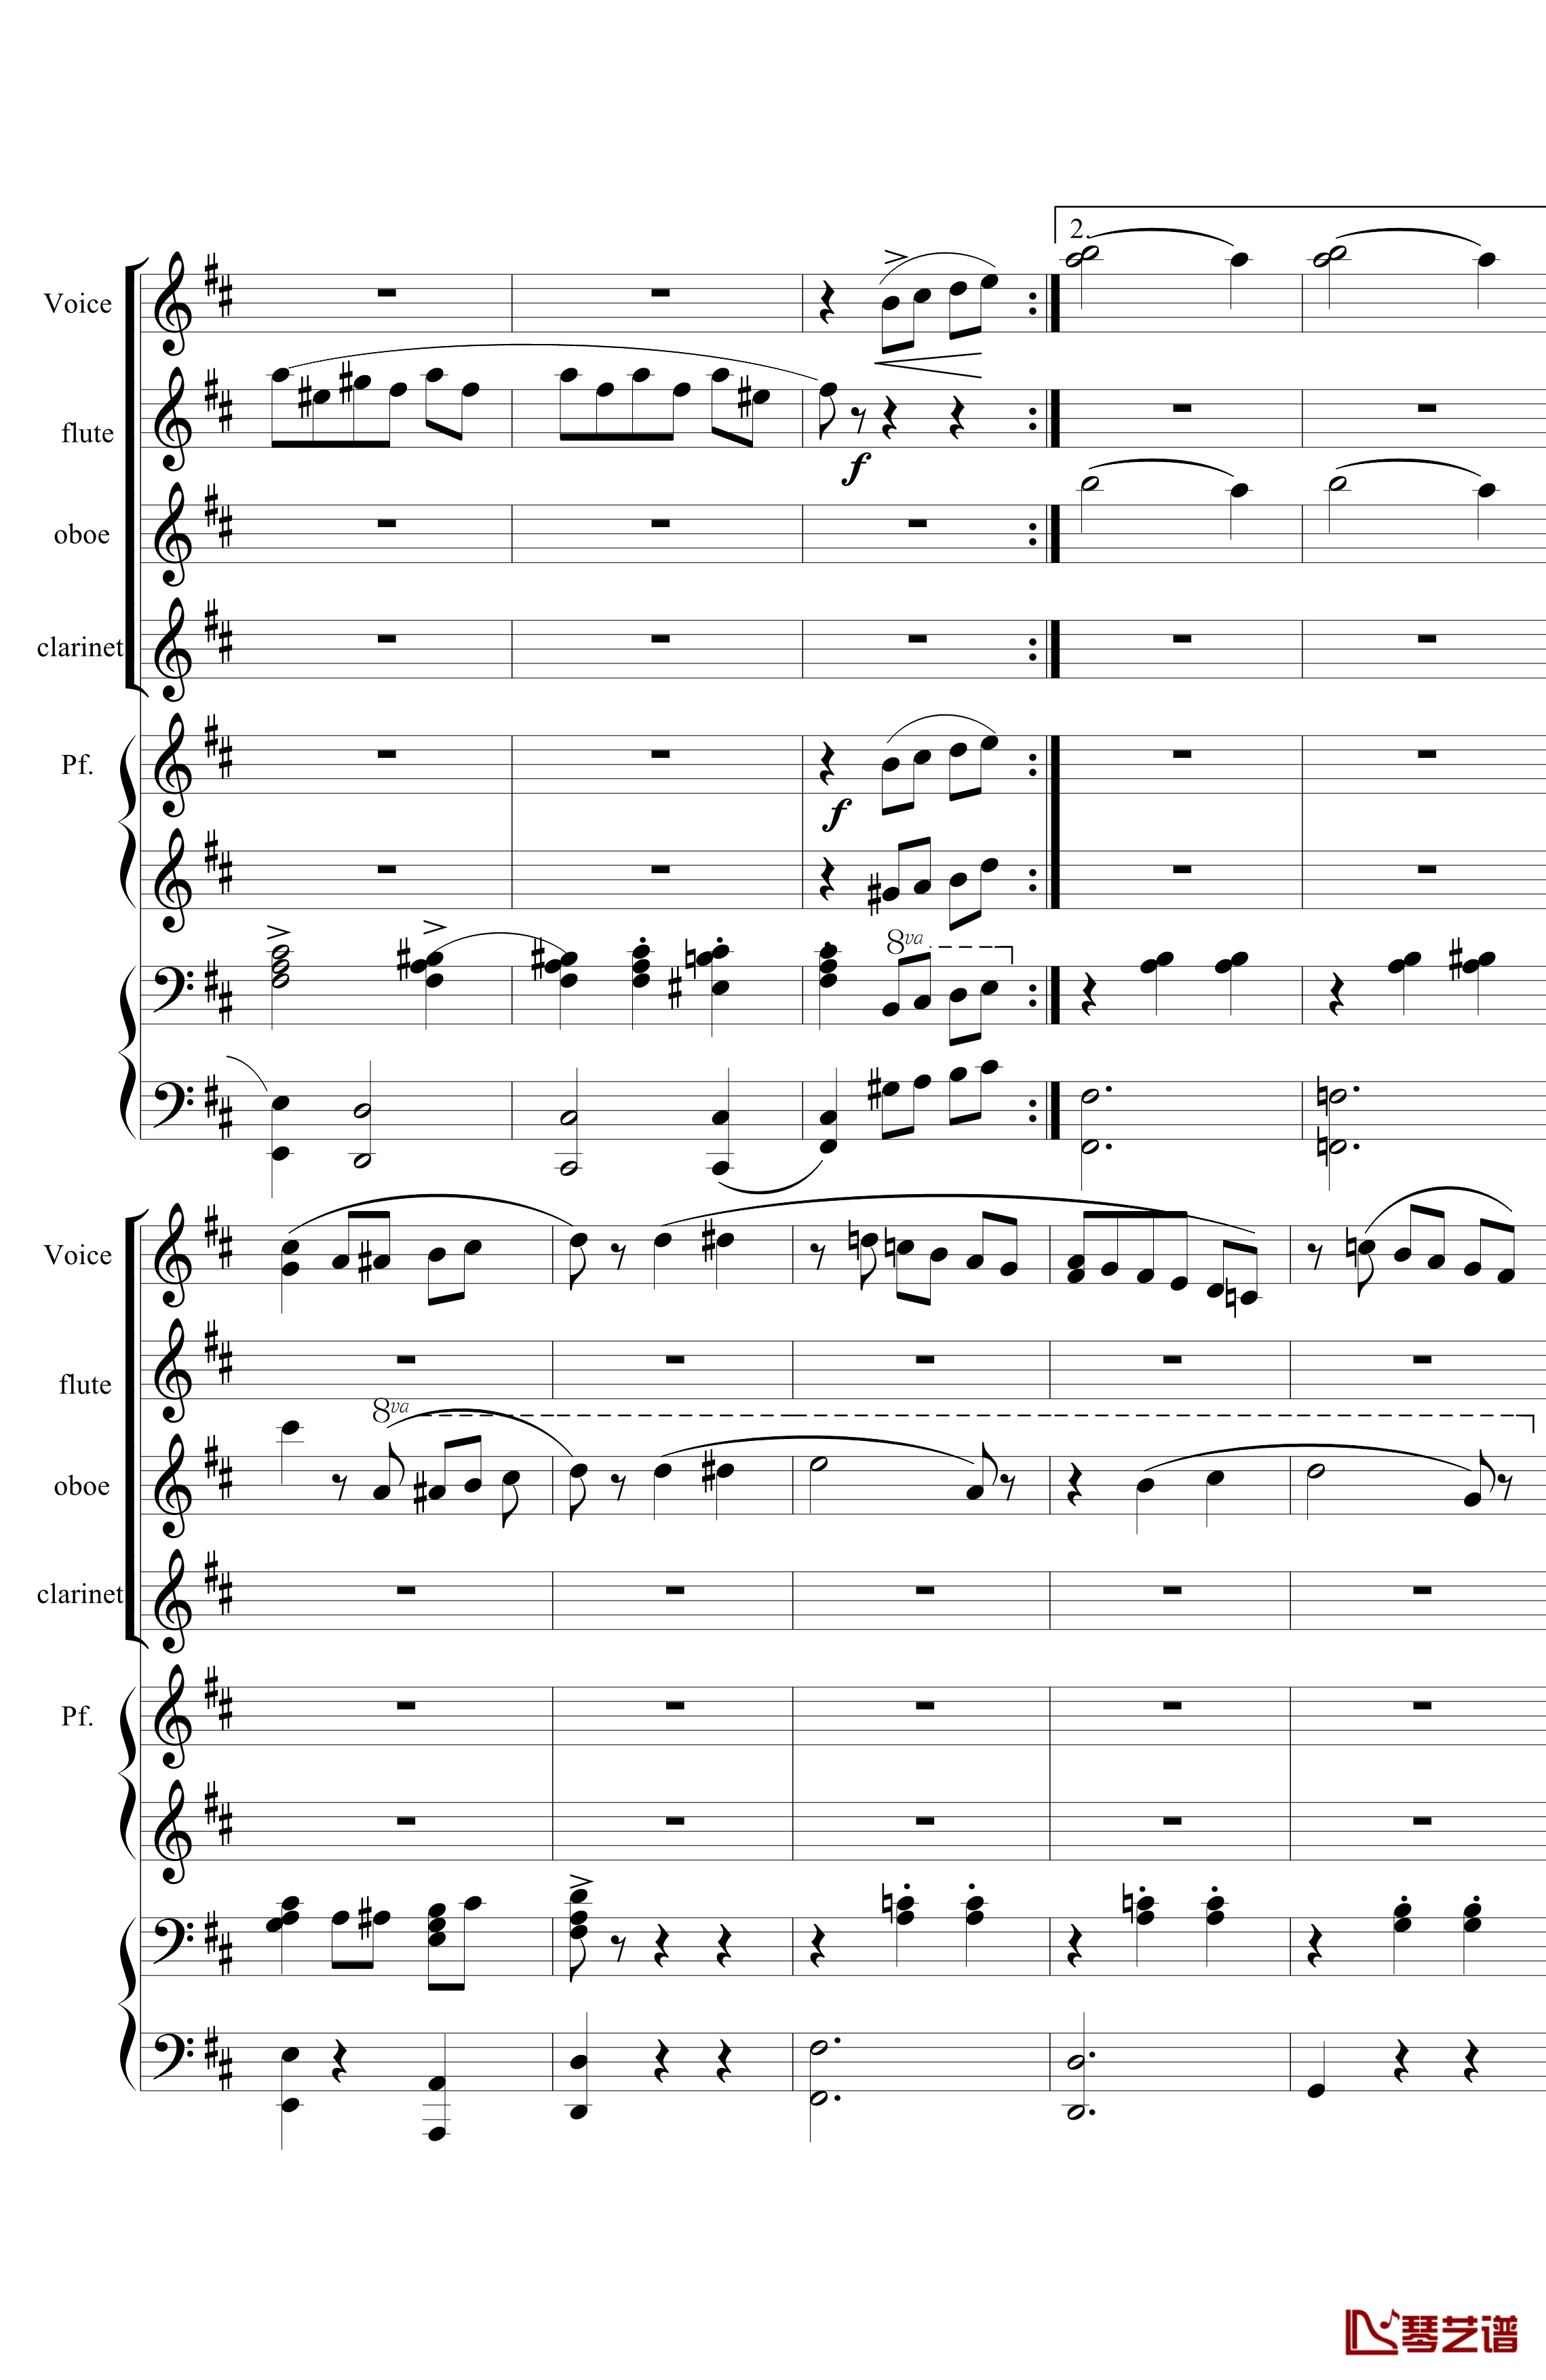 花之圆舞曲钢琴谱-室内乐-柴科夫斯基-Peter Ilyich Tchaikovsky11